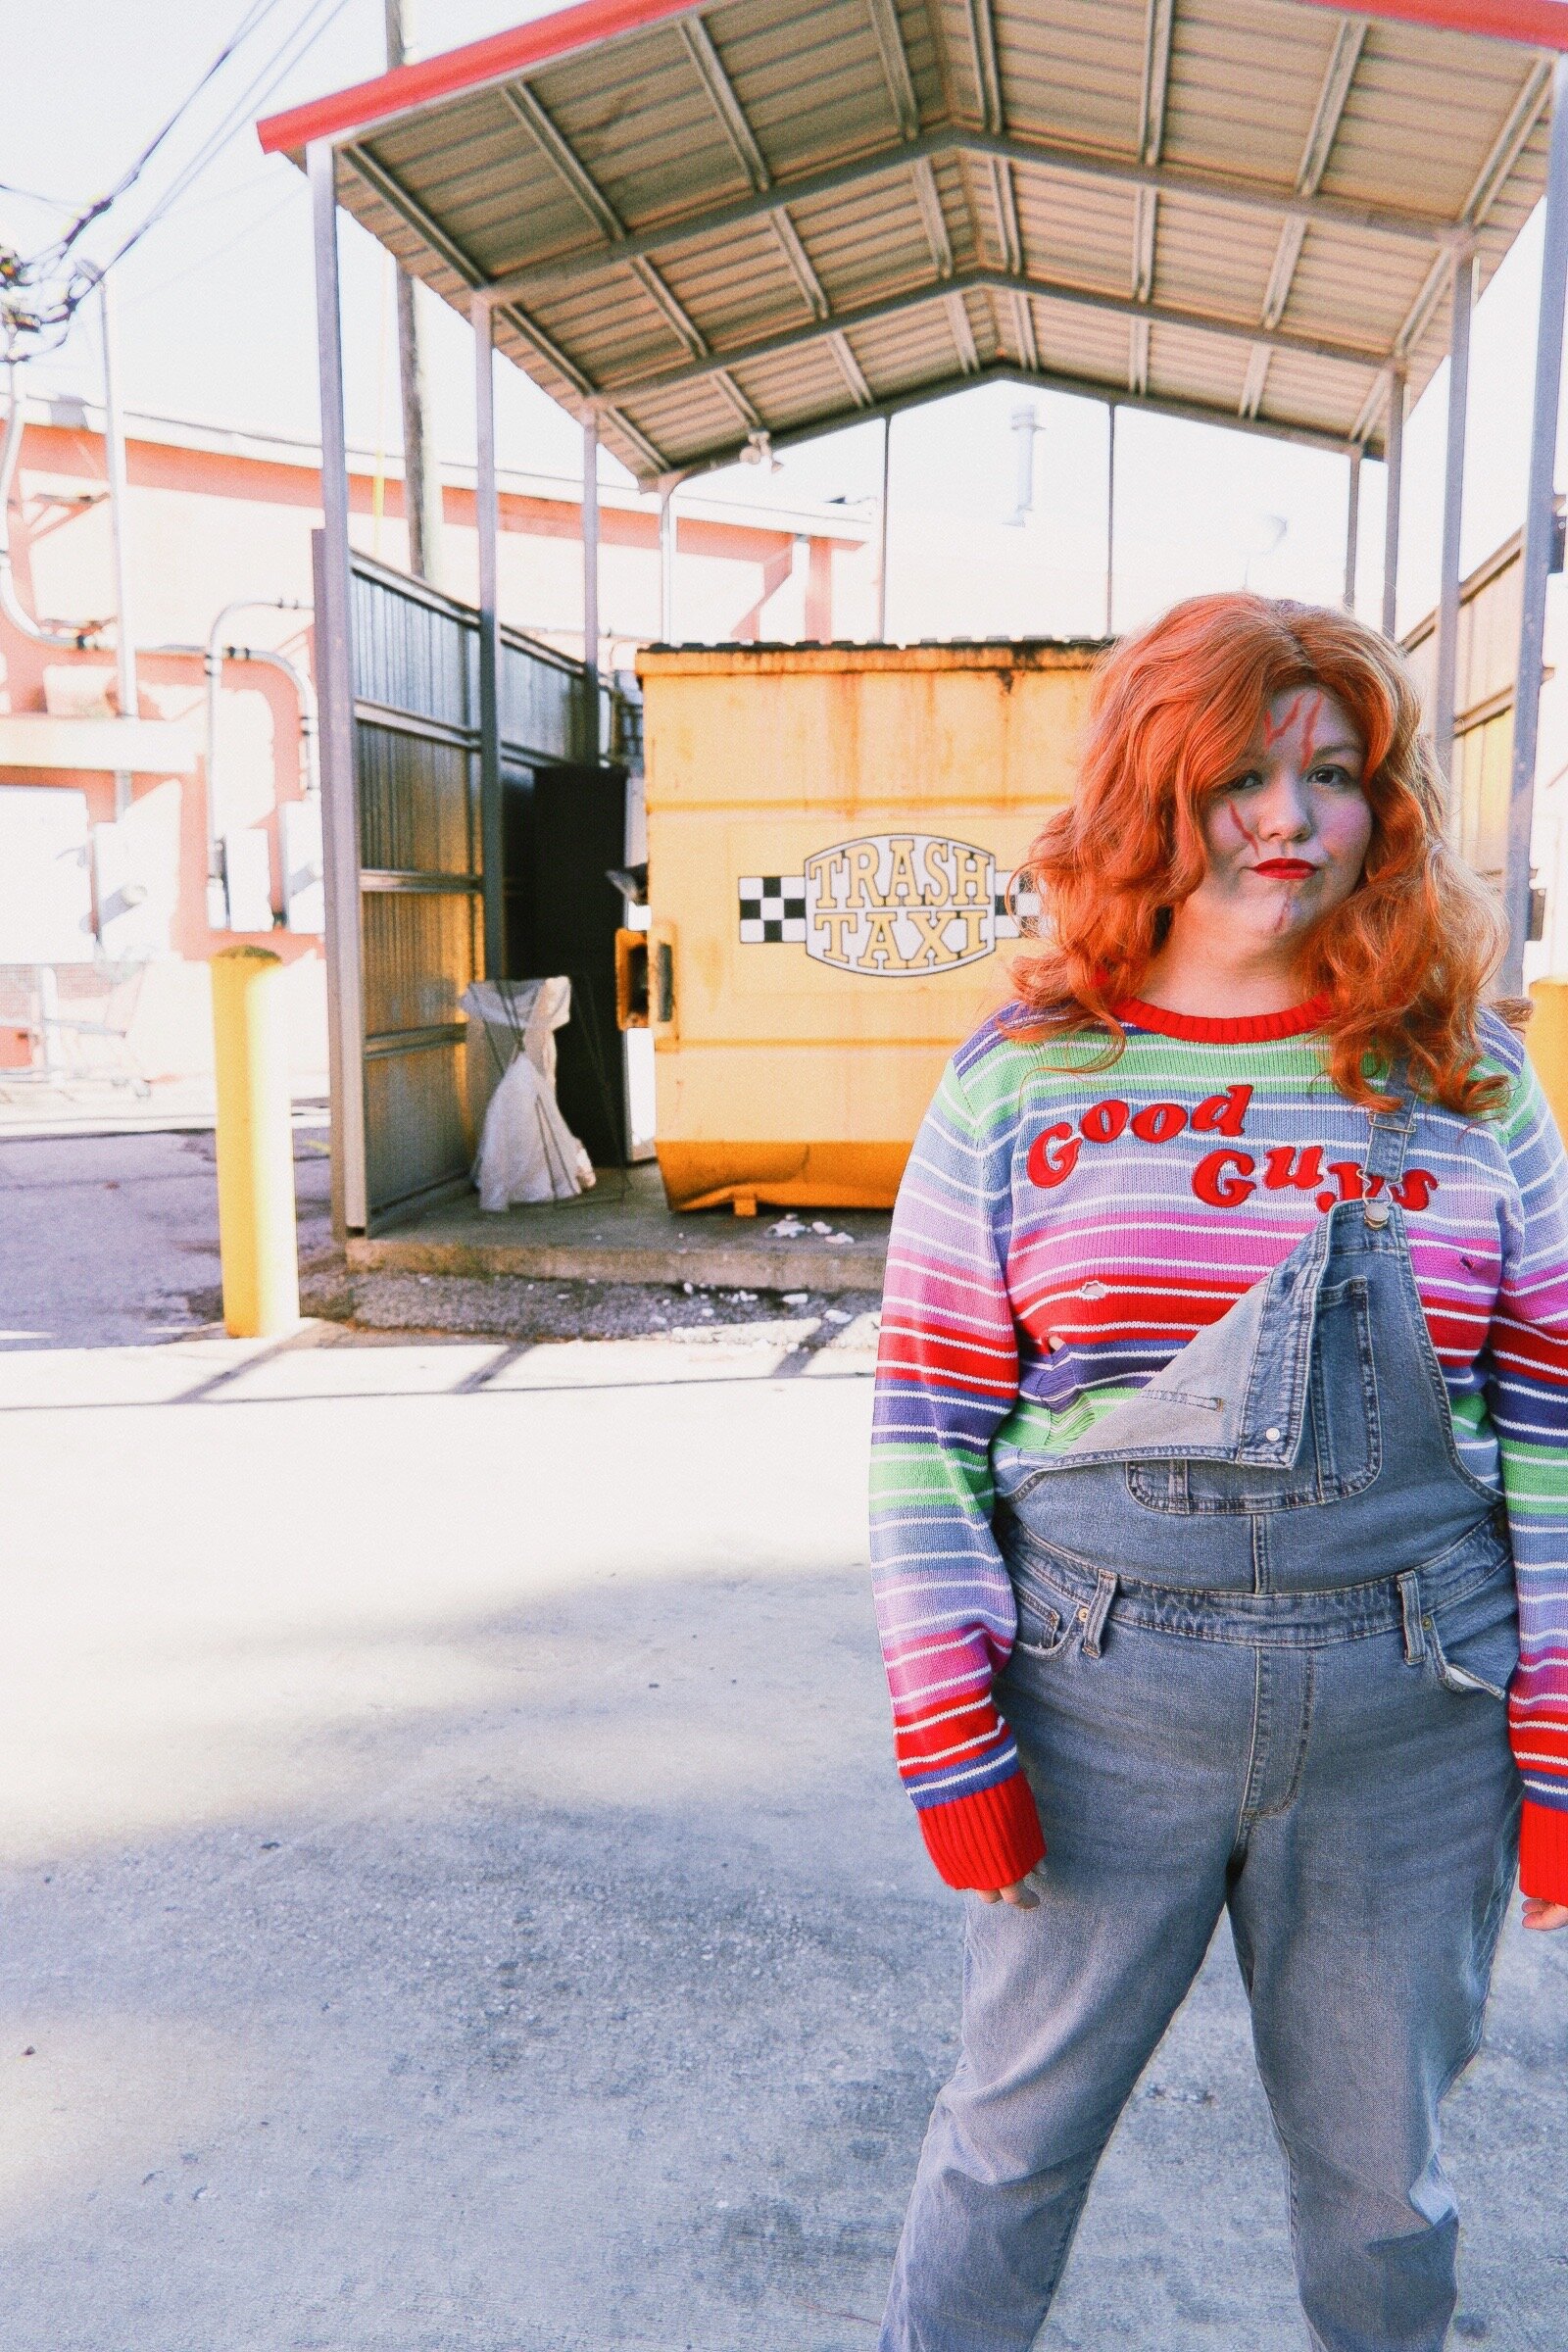 Invalidez Desprecio Familiar Bride of Chucky Dual Costumes DIY — Living It Up With Laurel